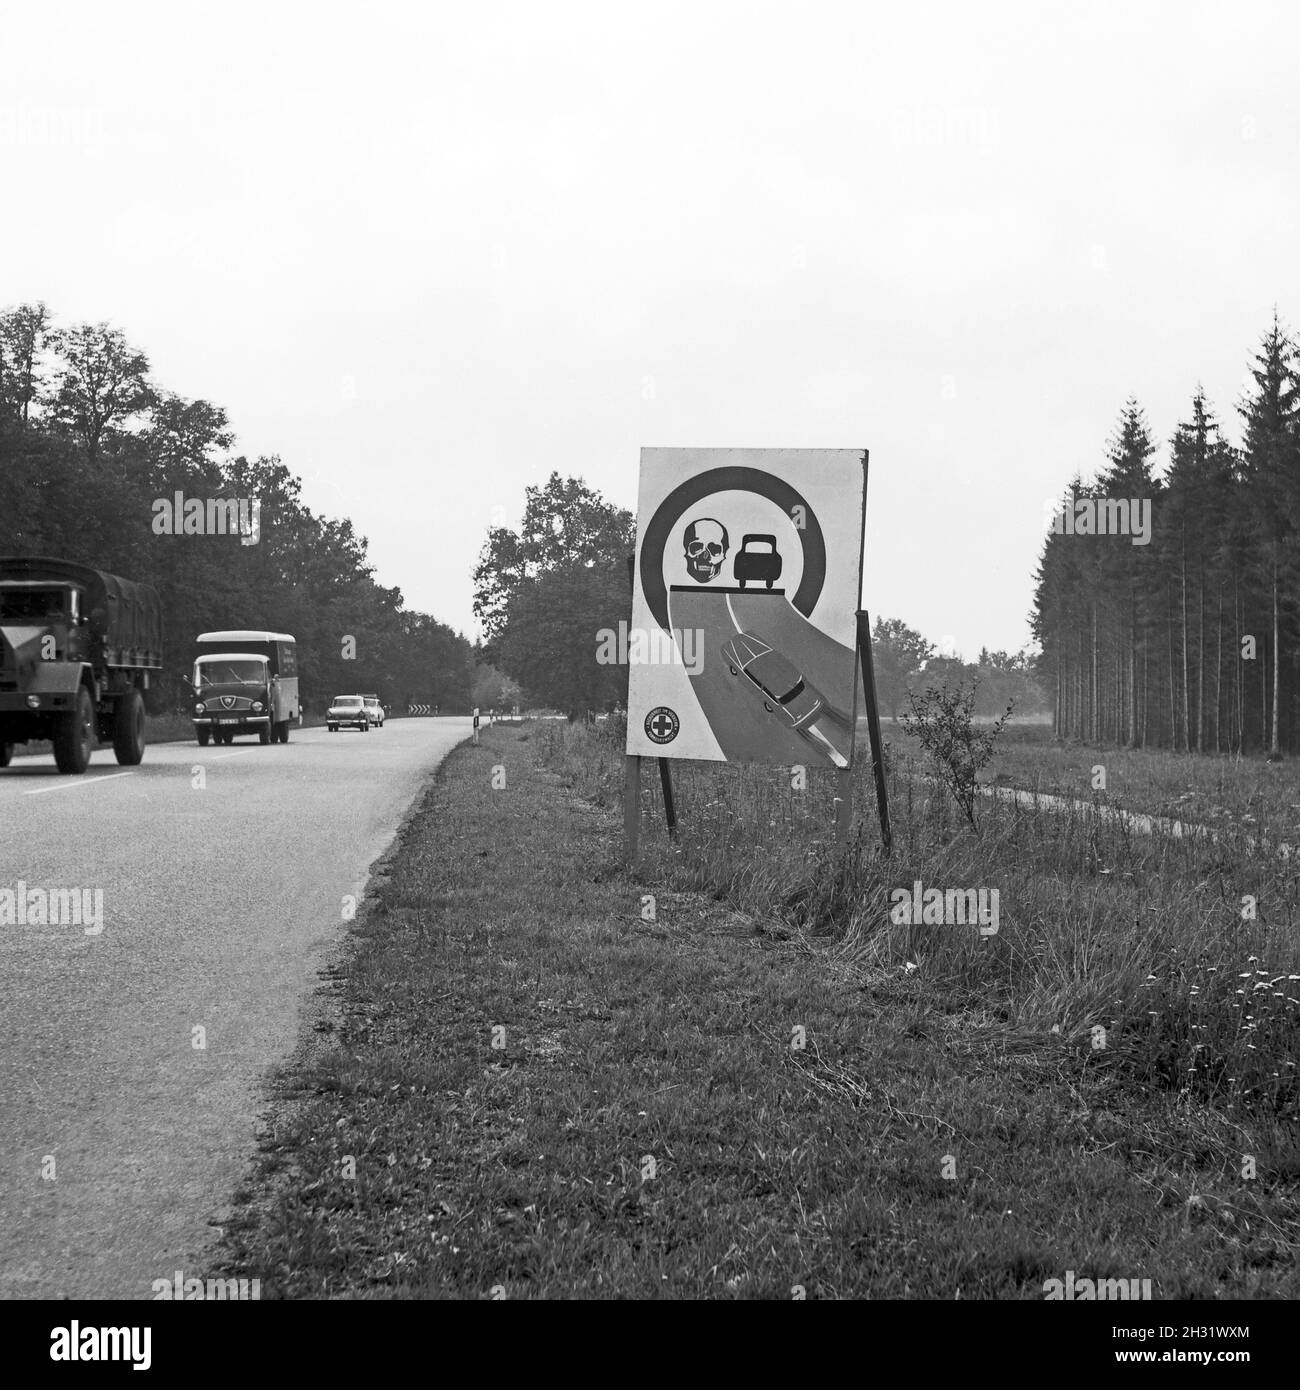 Warnschild 'Kein Überholen in der Kurve' am Straßenrand in Bayern, Deutschland 1959. Cartello stradale in Baviera, Germania 1959. Foto Stock